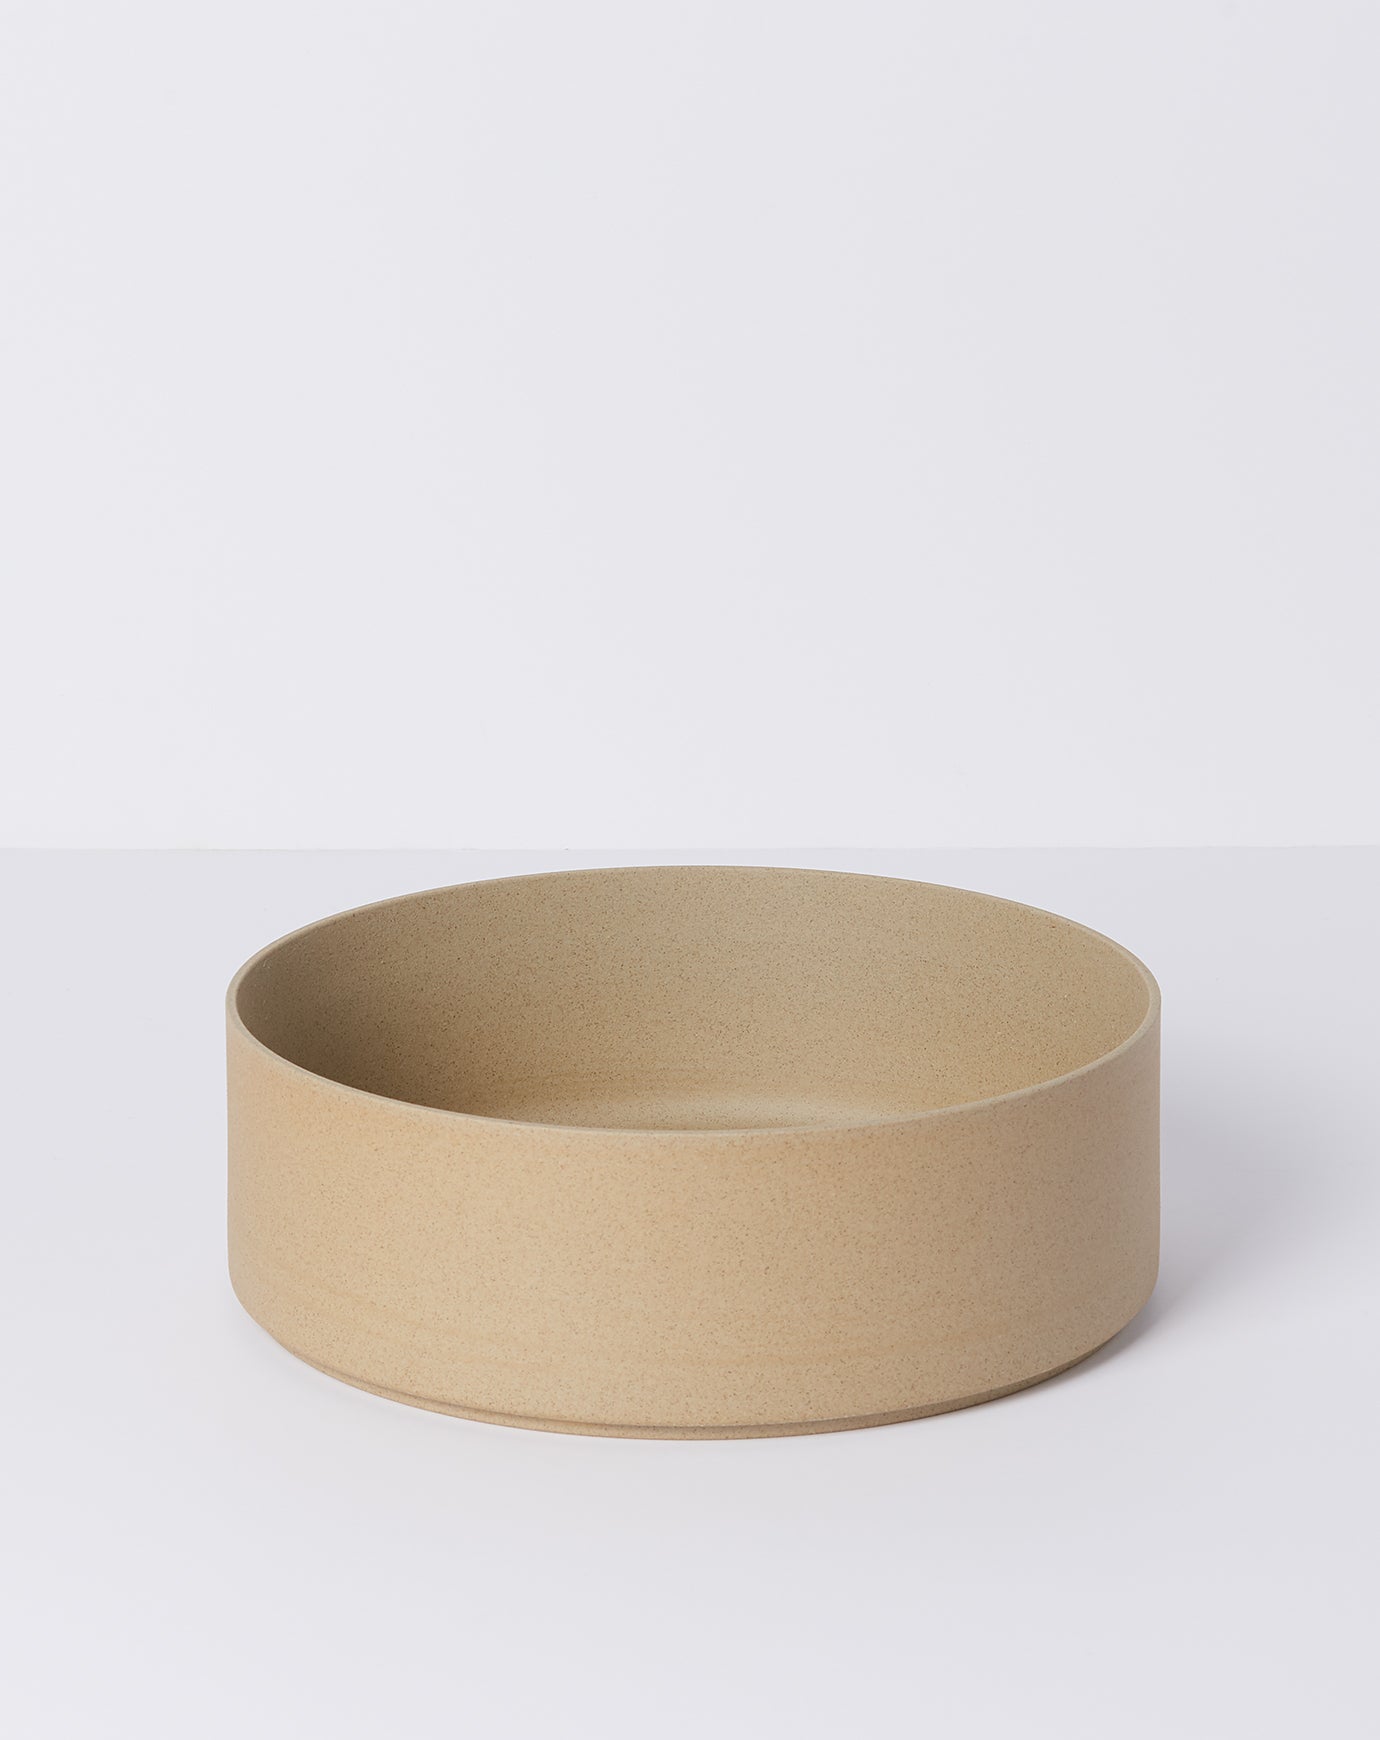 Hasami Porcelain Bowl in Natural